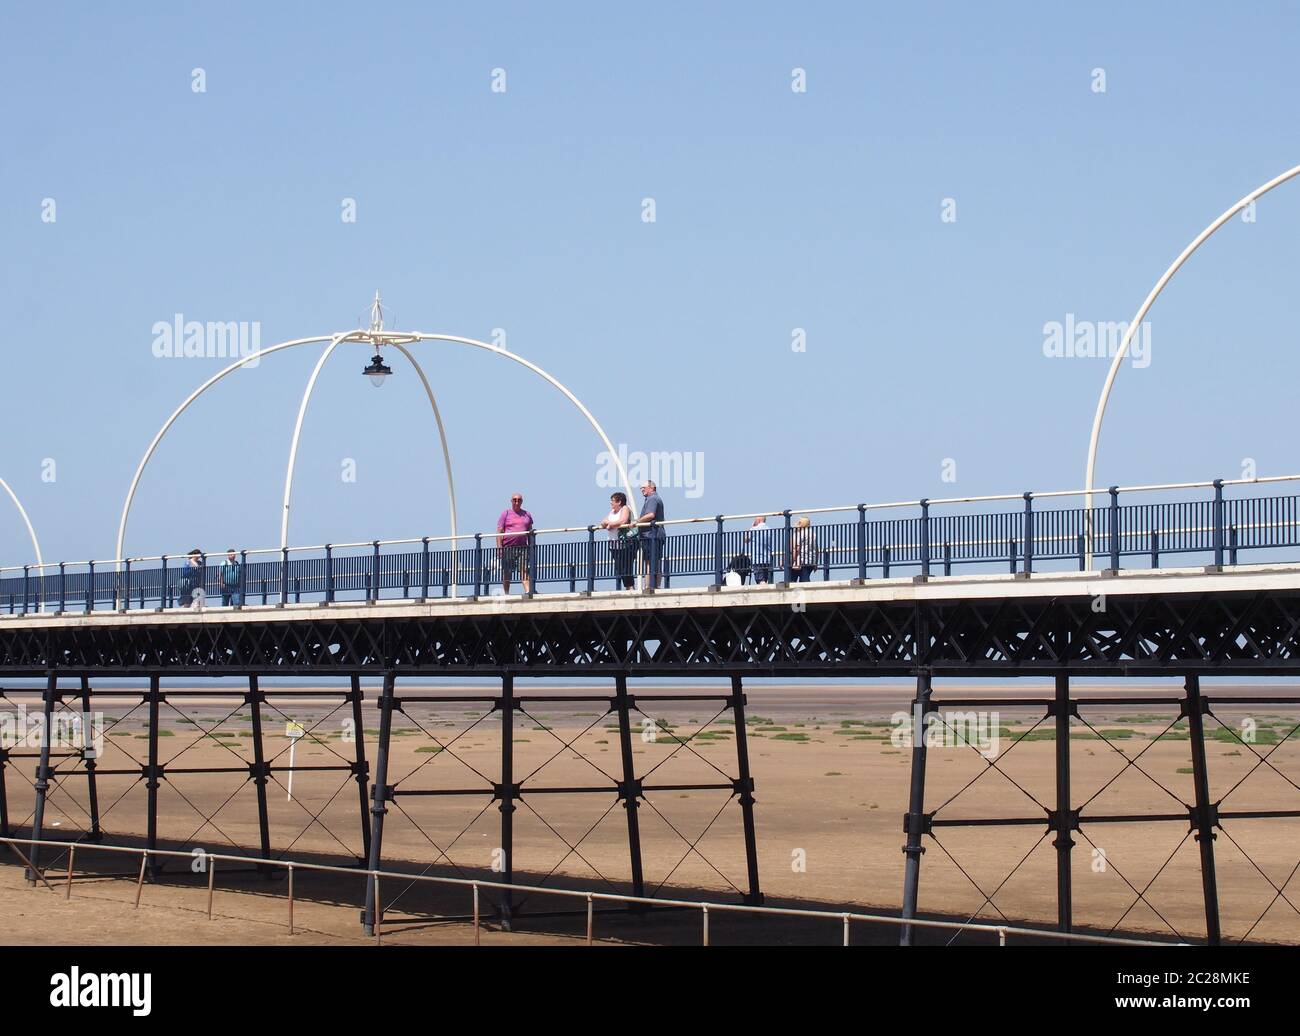 persone sul molo storico a southport merseyside con la spiaggia esposta a bassa marea in una giornata estiva luminosa Foto Stock